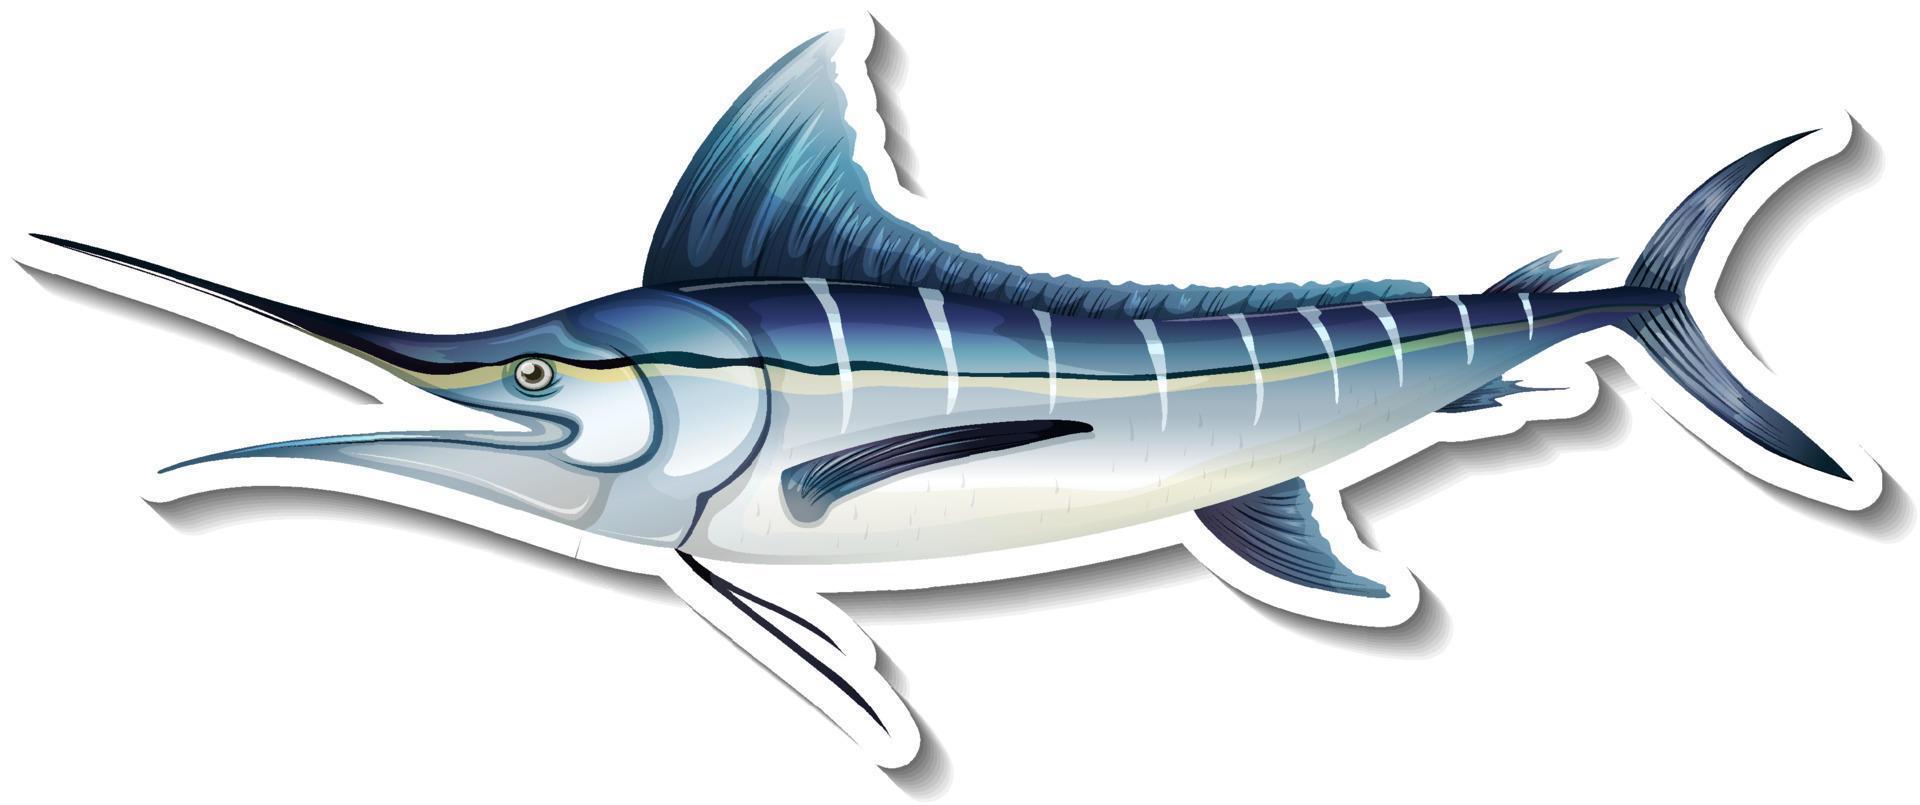 atlantic blue marlin fish sticker auf weißem hintergrund vektor